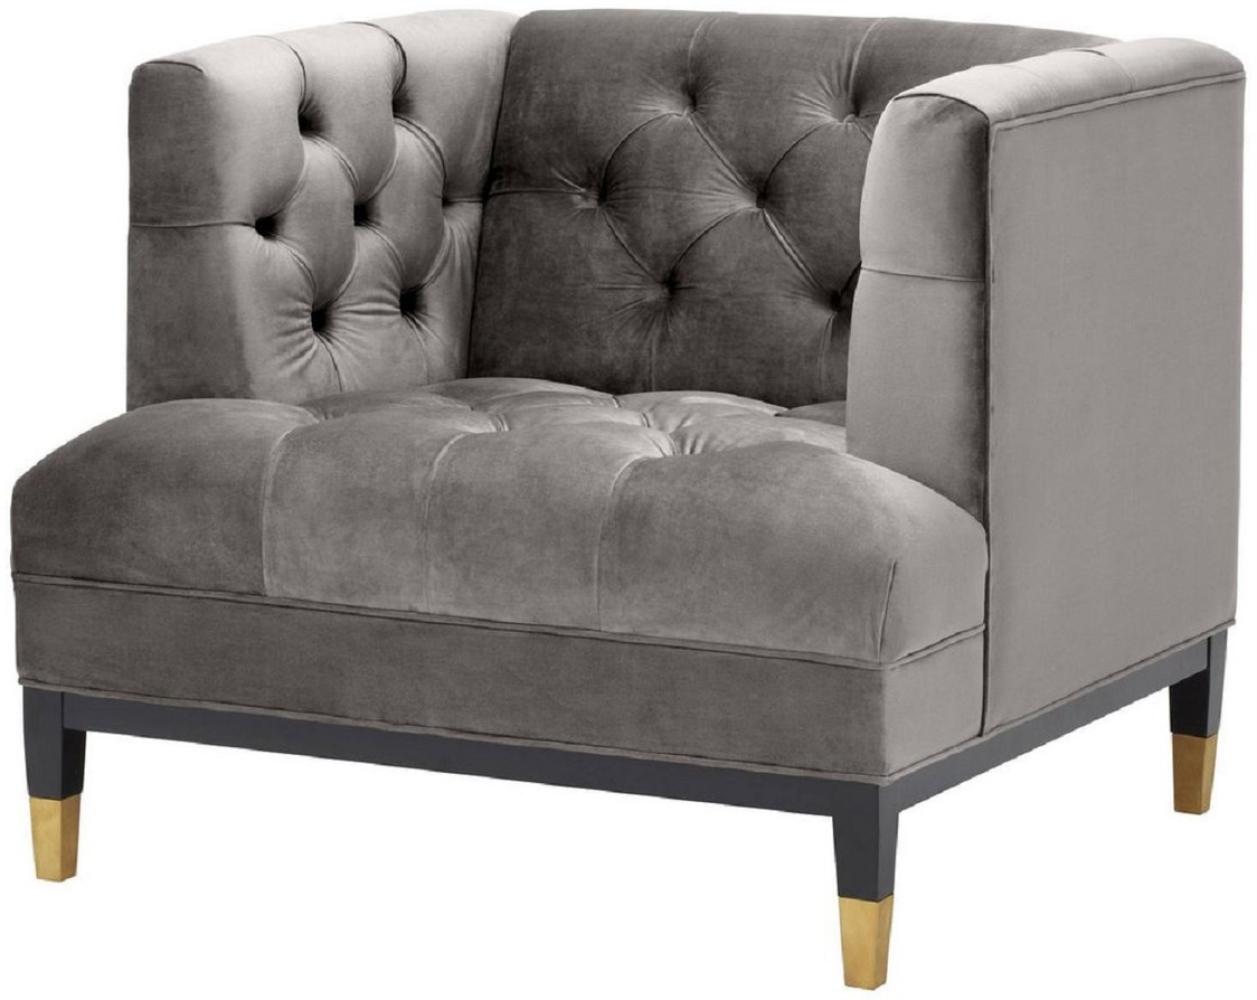 Casa Padrino Luxus Wohnzimmer Sessel Grau / Schwarz / Messingfarben 93 x 85 x H. 79 cm - Chesterfield Möbel Bild 1